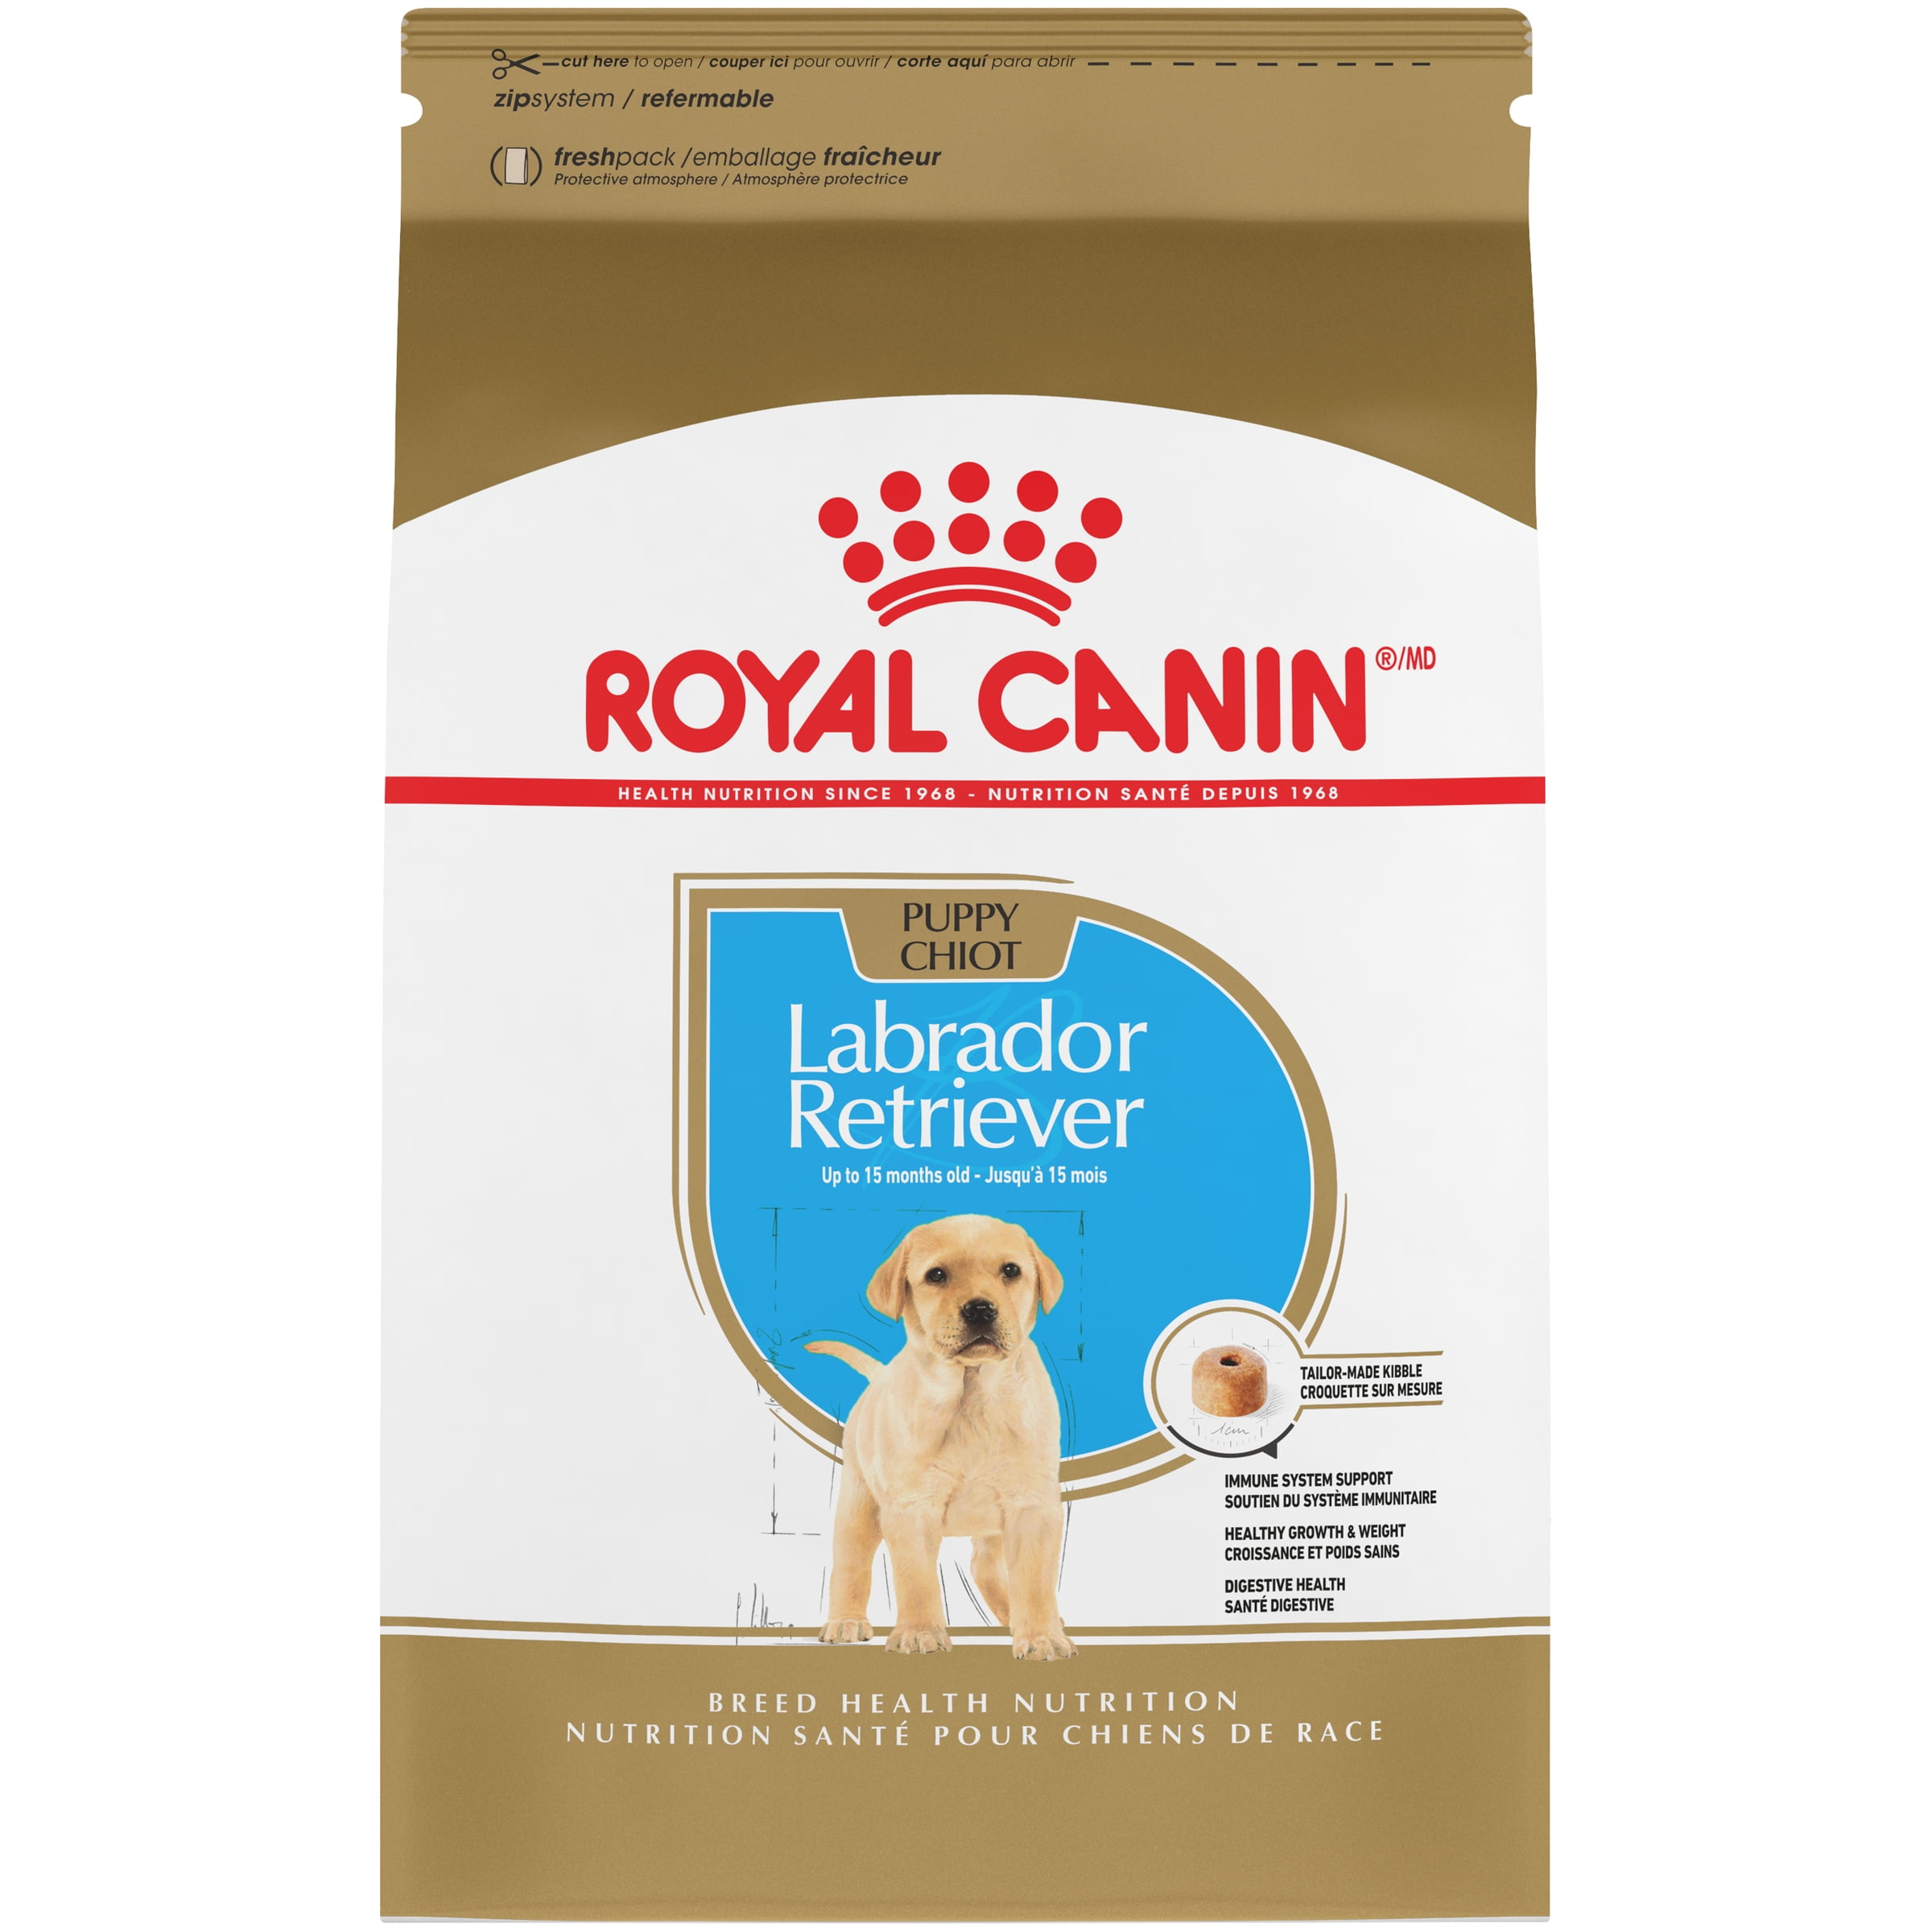 Royal Canin Puppy Food Feeding Chart